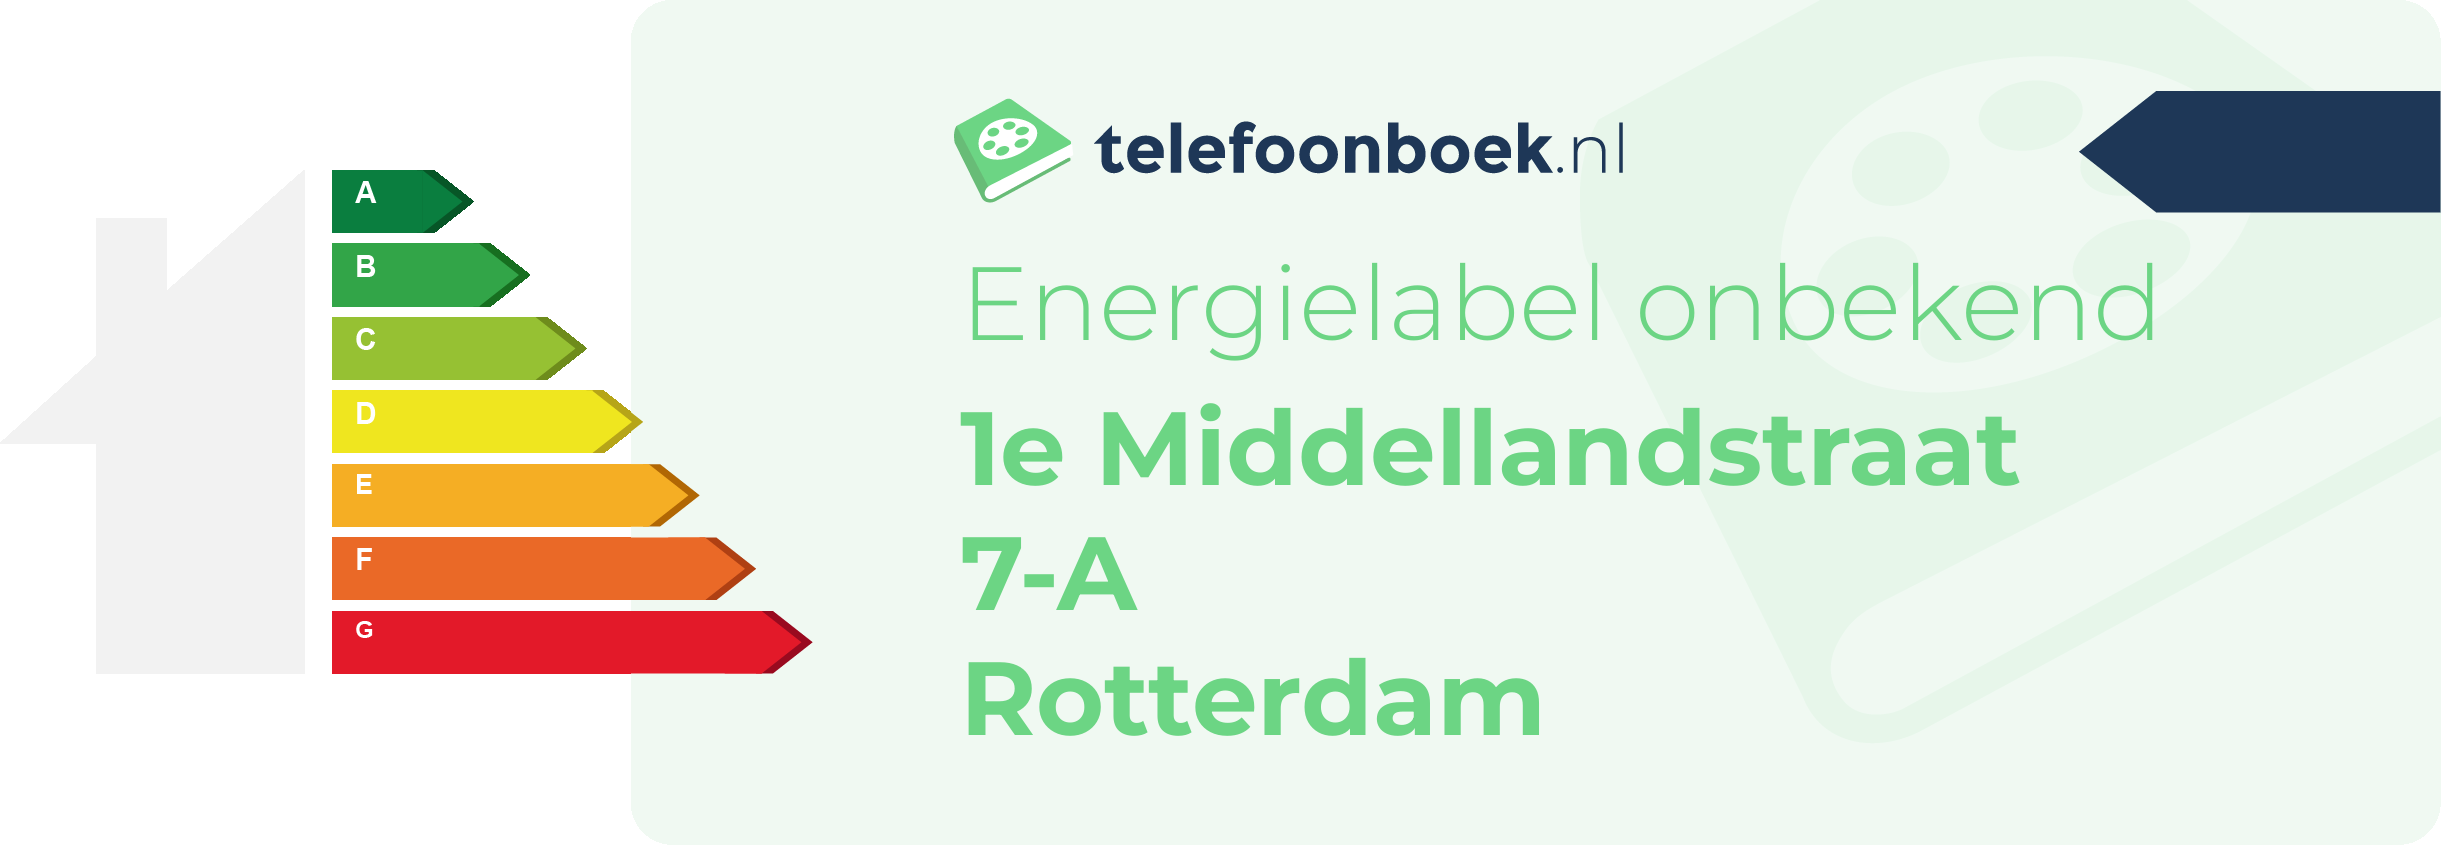 Energielabel 1e Middellandstraat 7-A Rotterdam